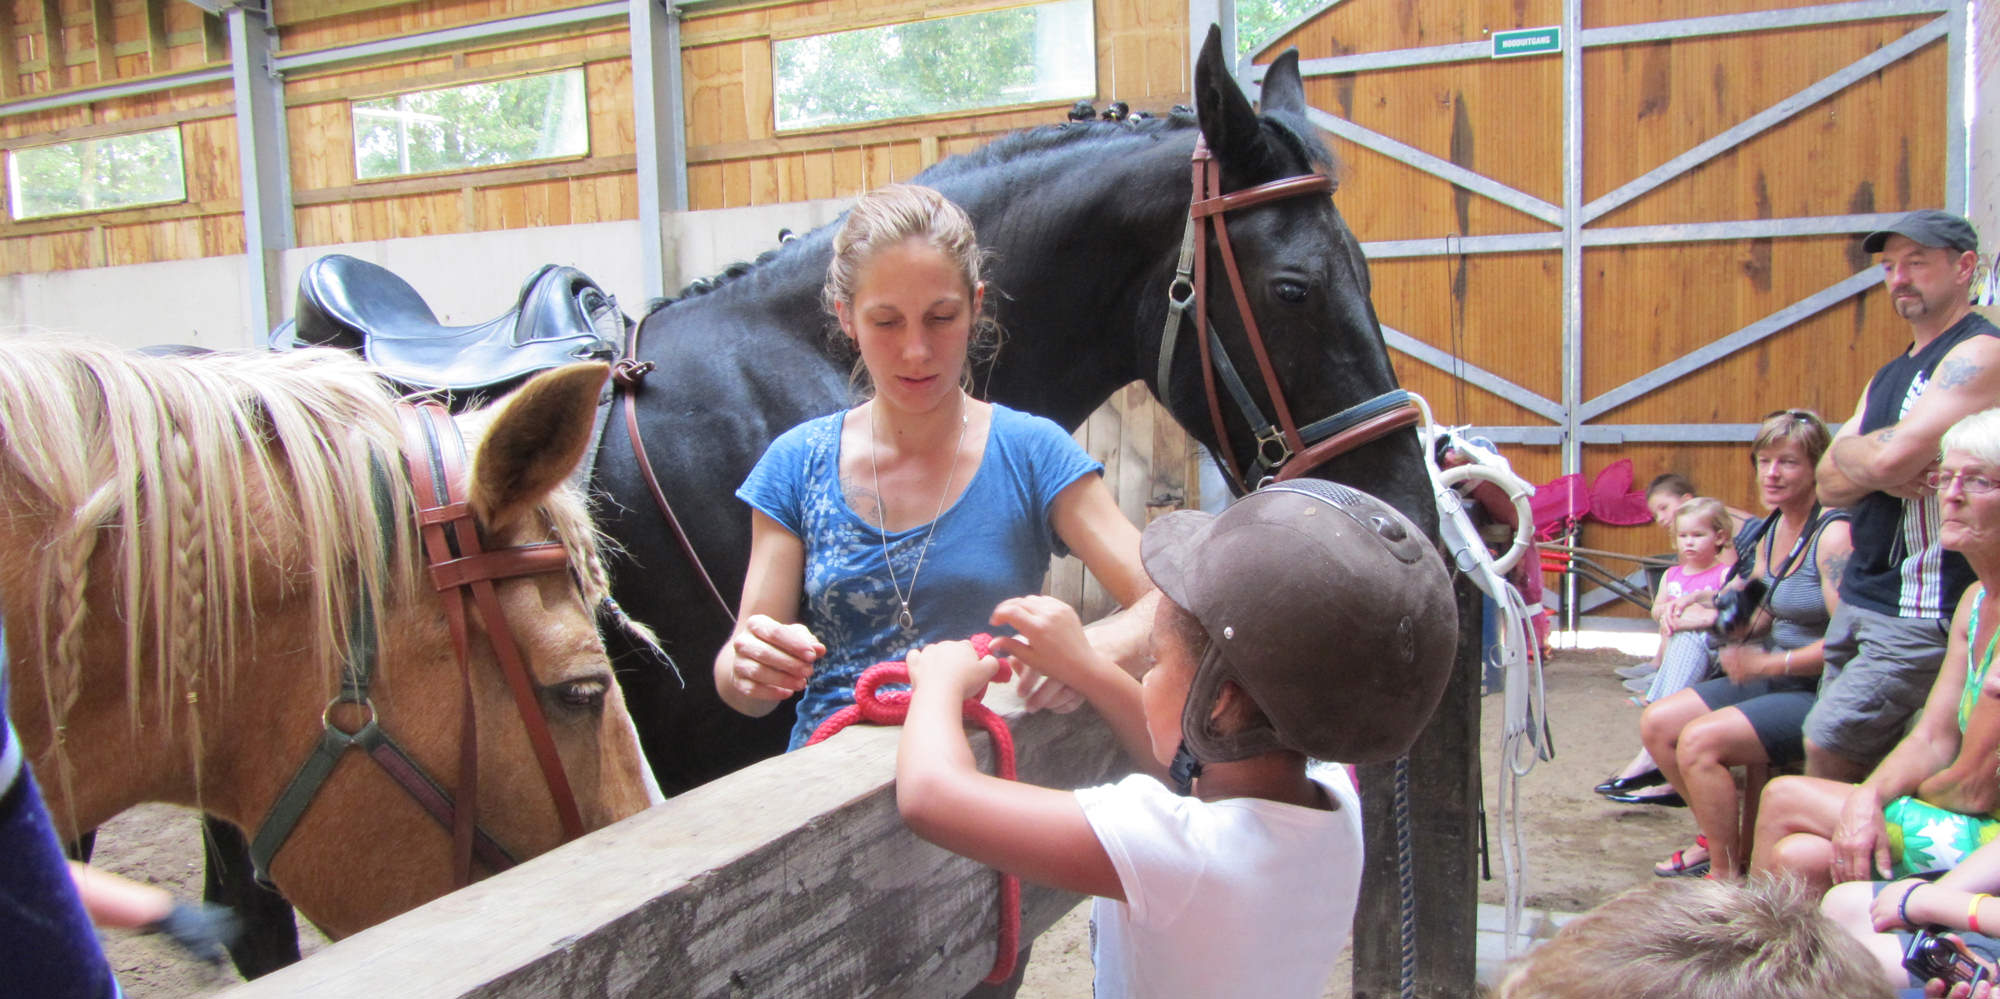 De Paardenboerderij - Kinderkamp krokusvakantie